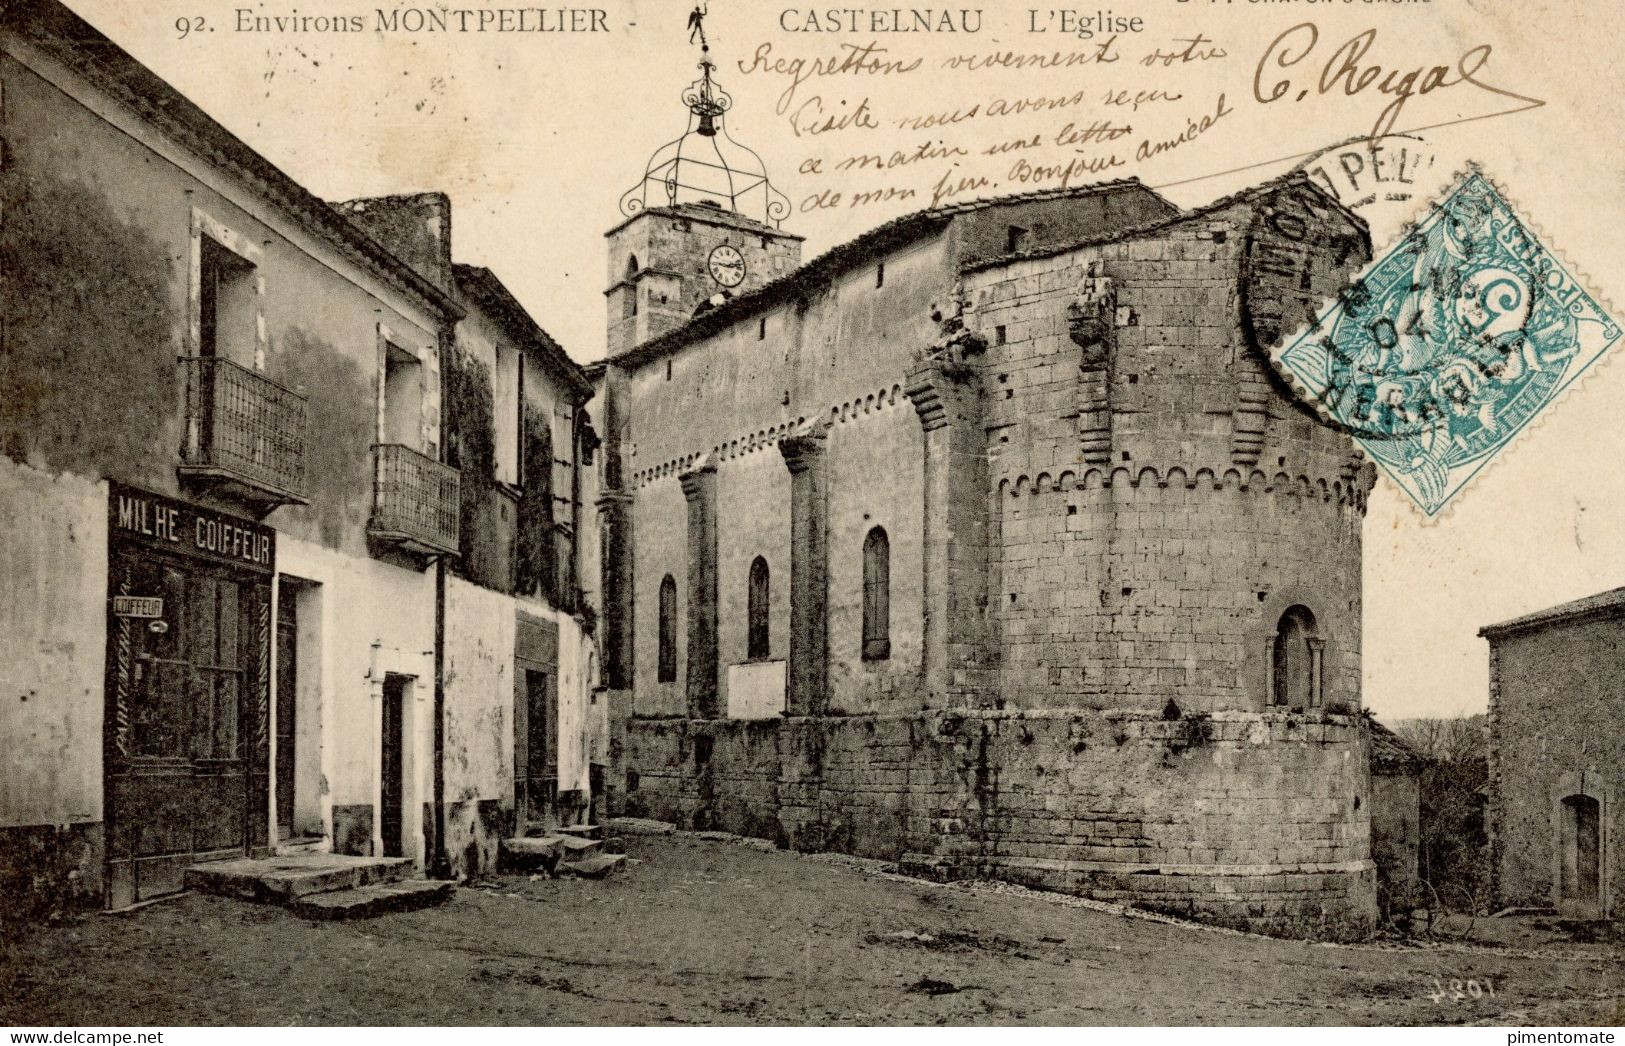 CASTELNAU L'EGLISE DANS LES ENVIRONS DE MONTPELLIER 1904 MILHE COIFFEUR - Castelnau Le Lez